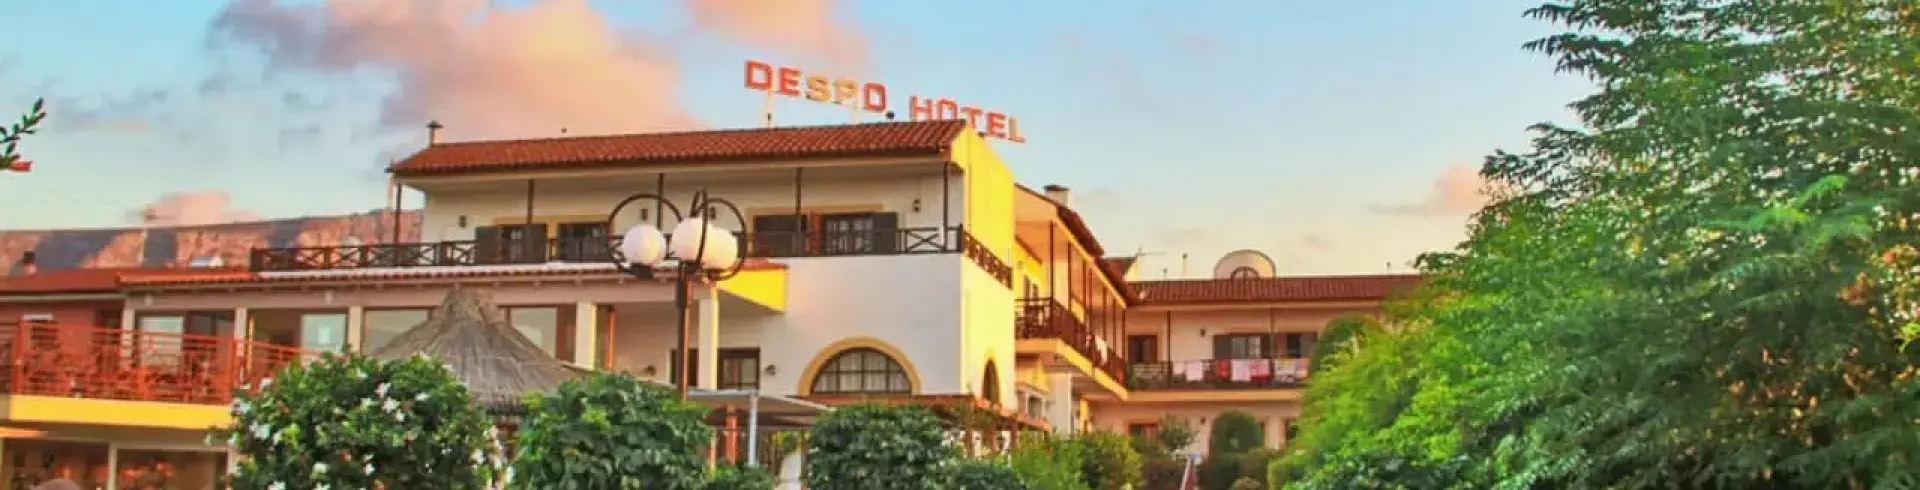 Despo Hotel